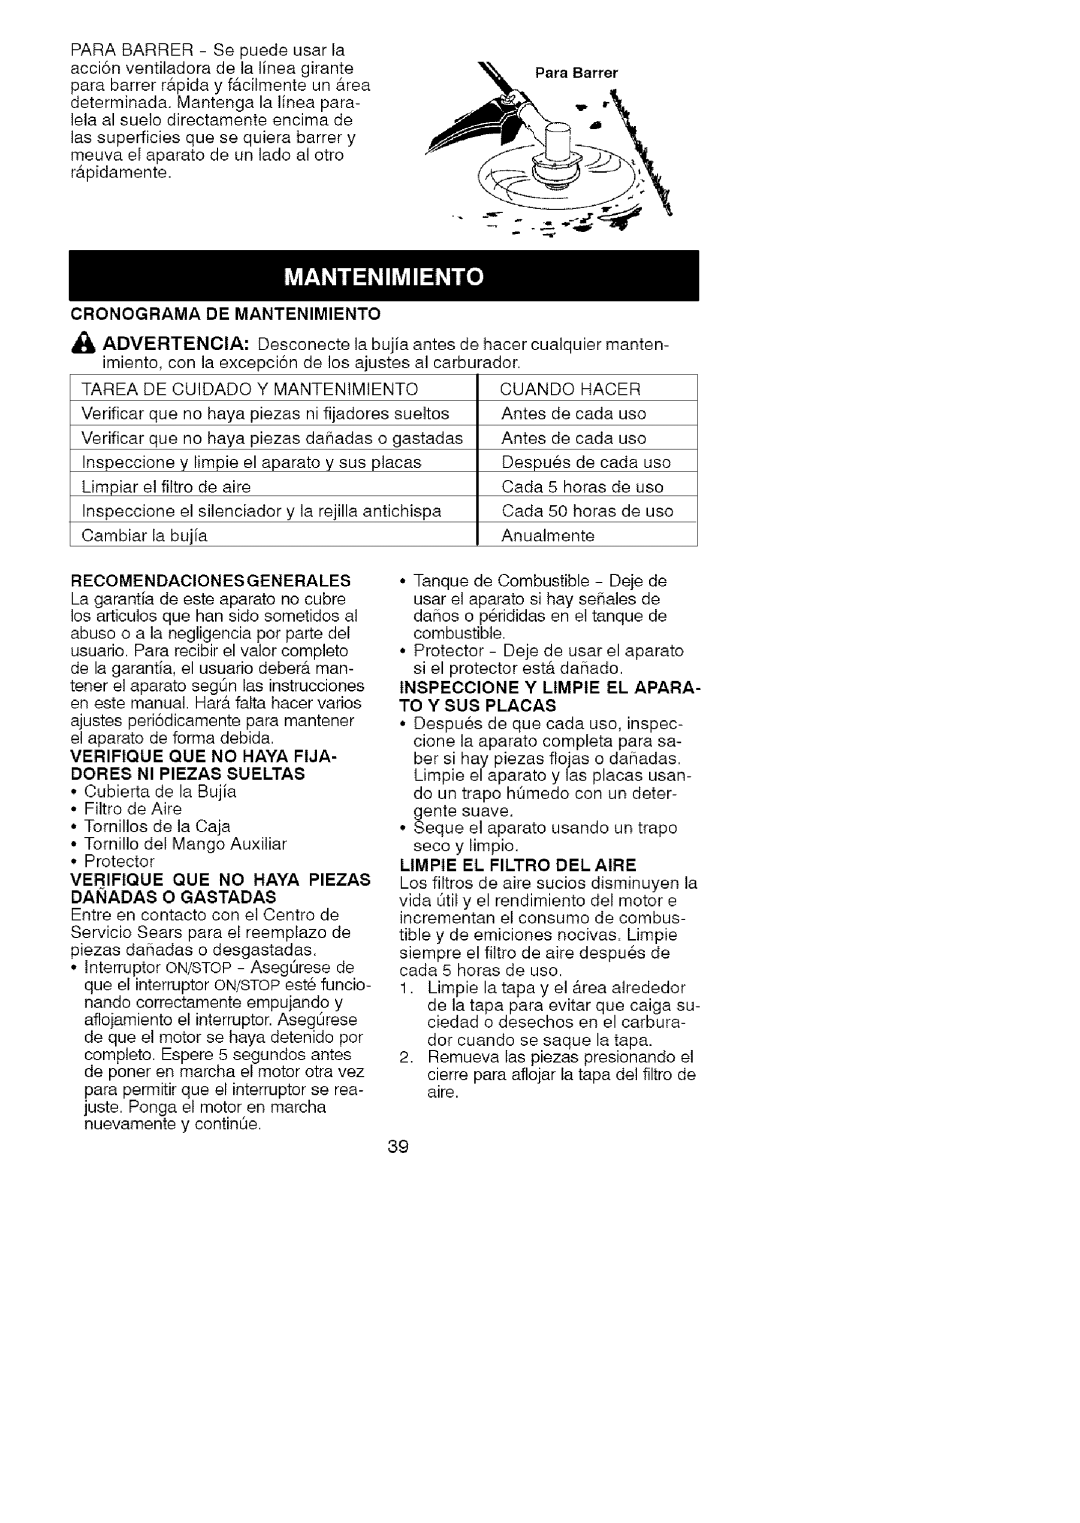 Craftsman 358.791051 manual Cronograma De Mantenimiento, ara Barrer, Recomendaciones Generales, Limpie El Filtro Del Aire 